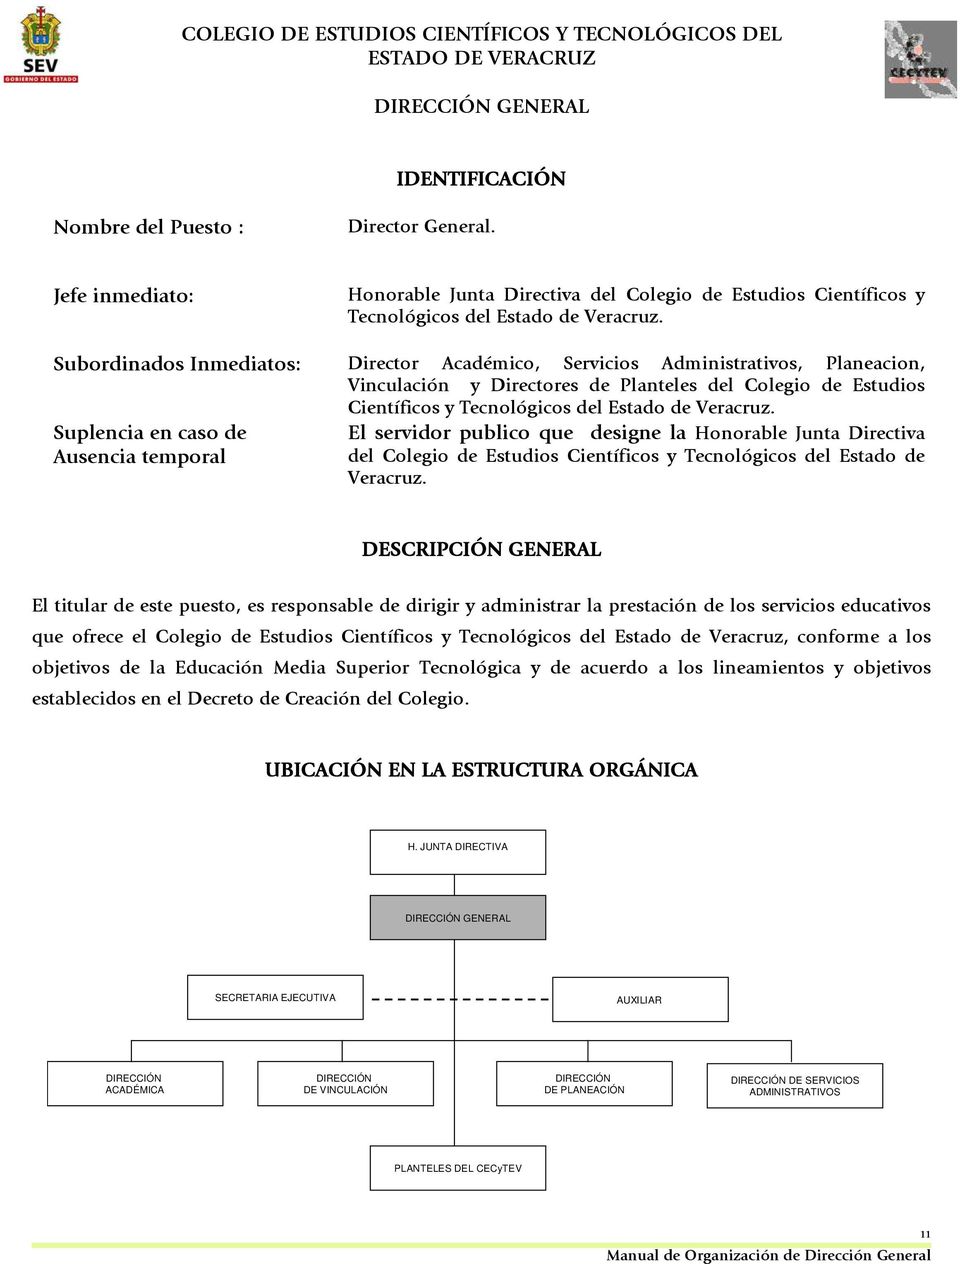 Suplencia en caso de Ausencia temporal El servidor publico que designe la Honorable Junta Directiva del Colegio de Estudios Científicos y Tecnológicos del Estado de Veracruz.